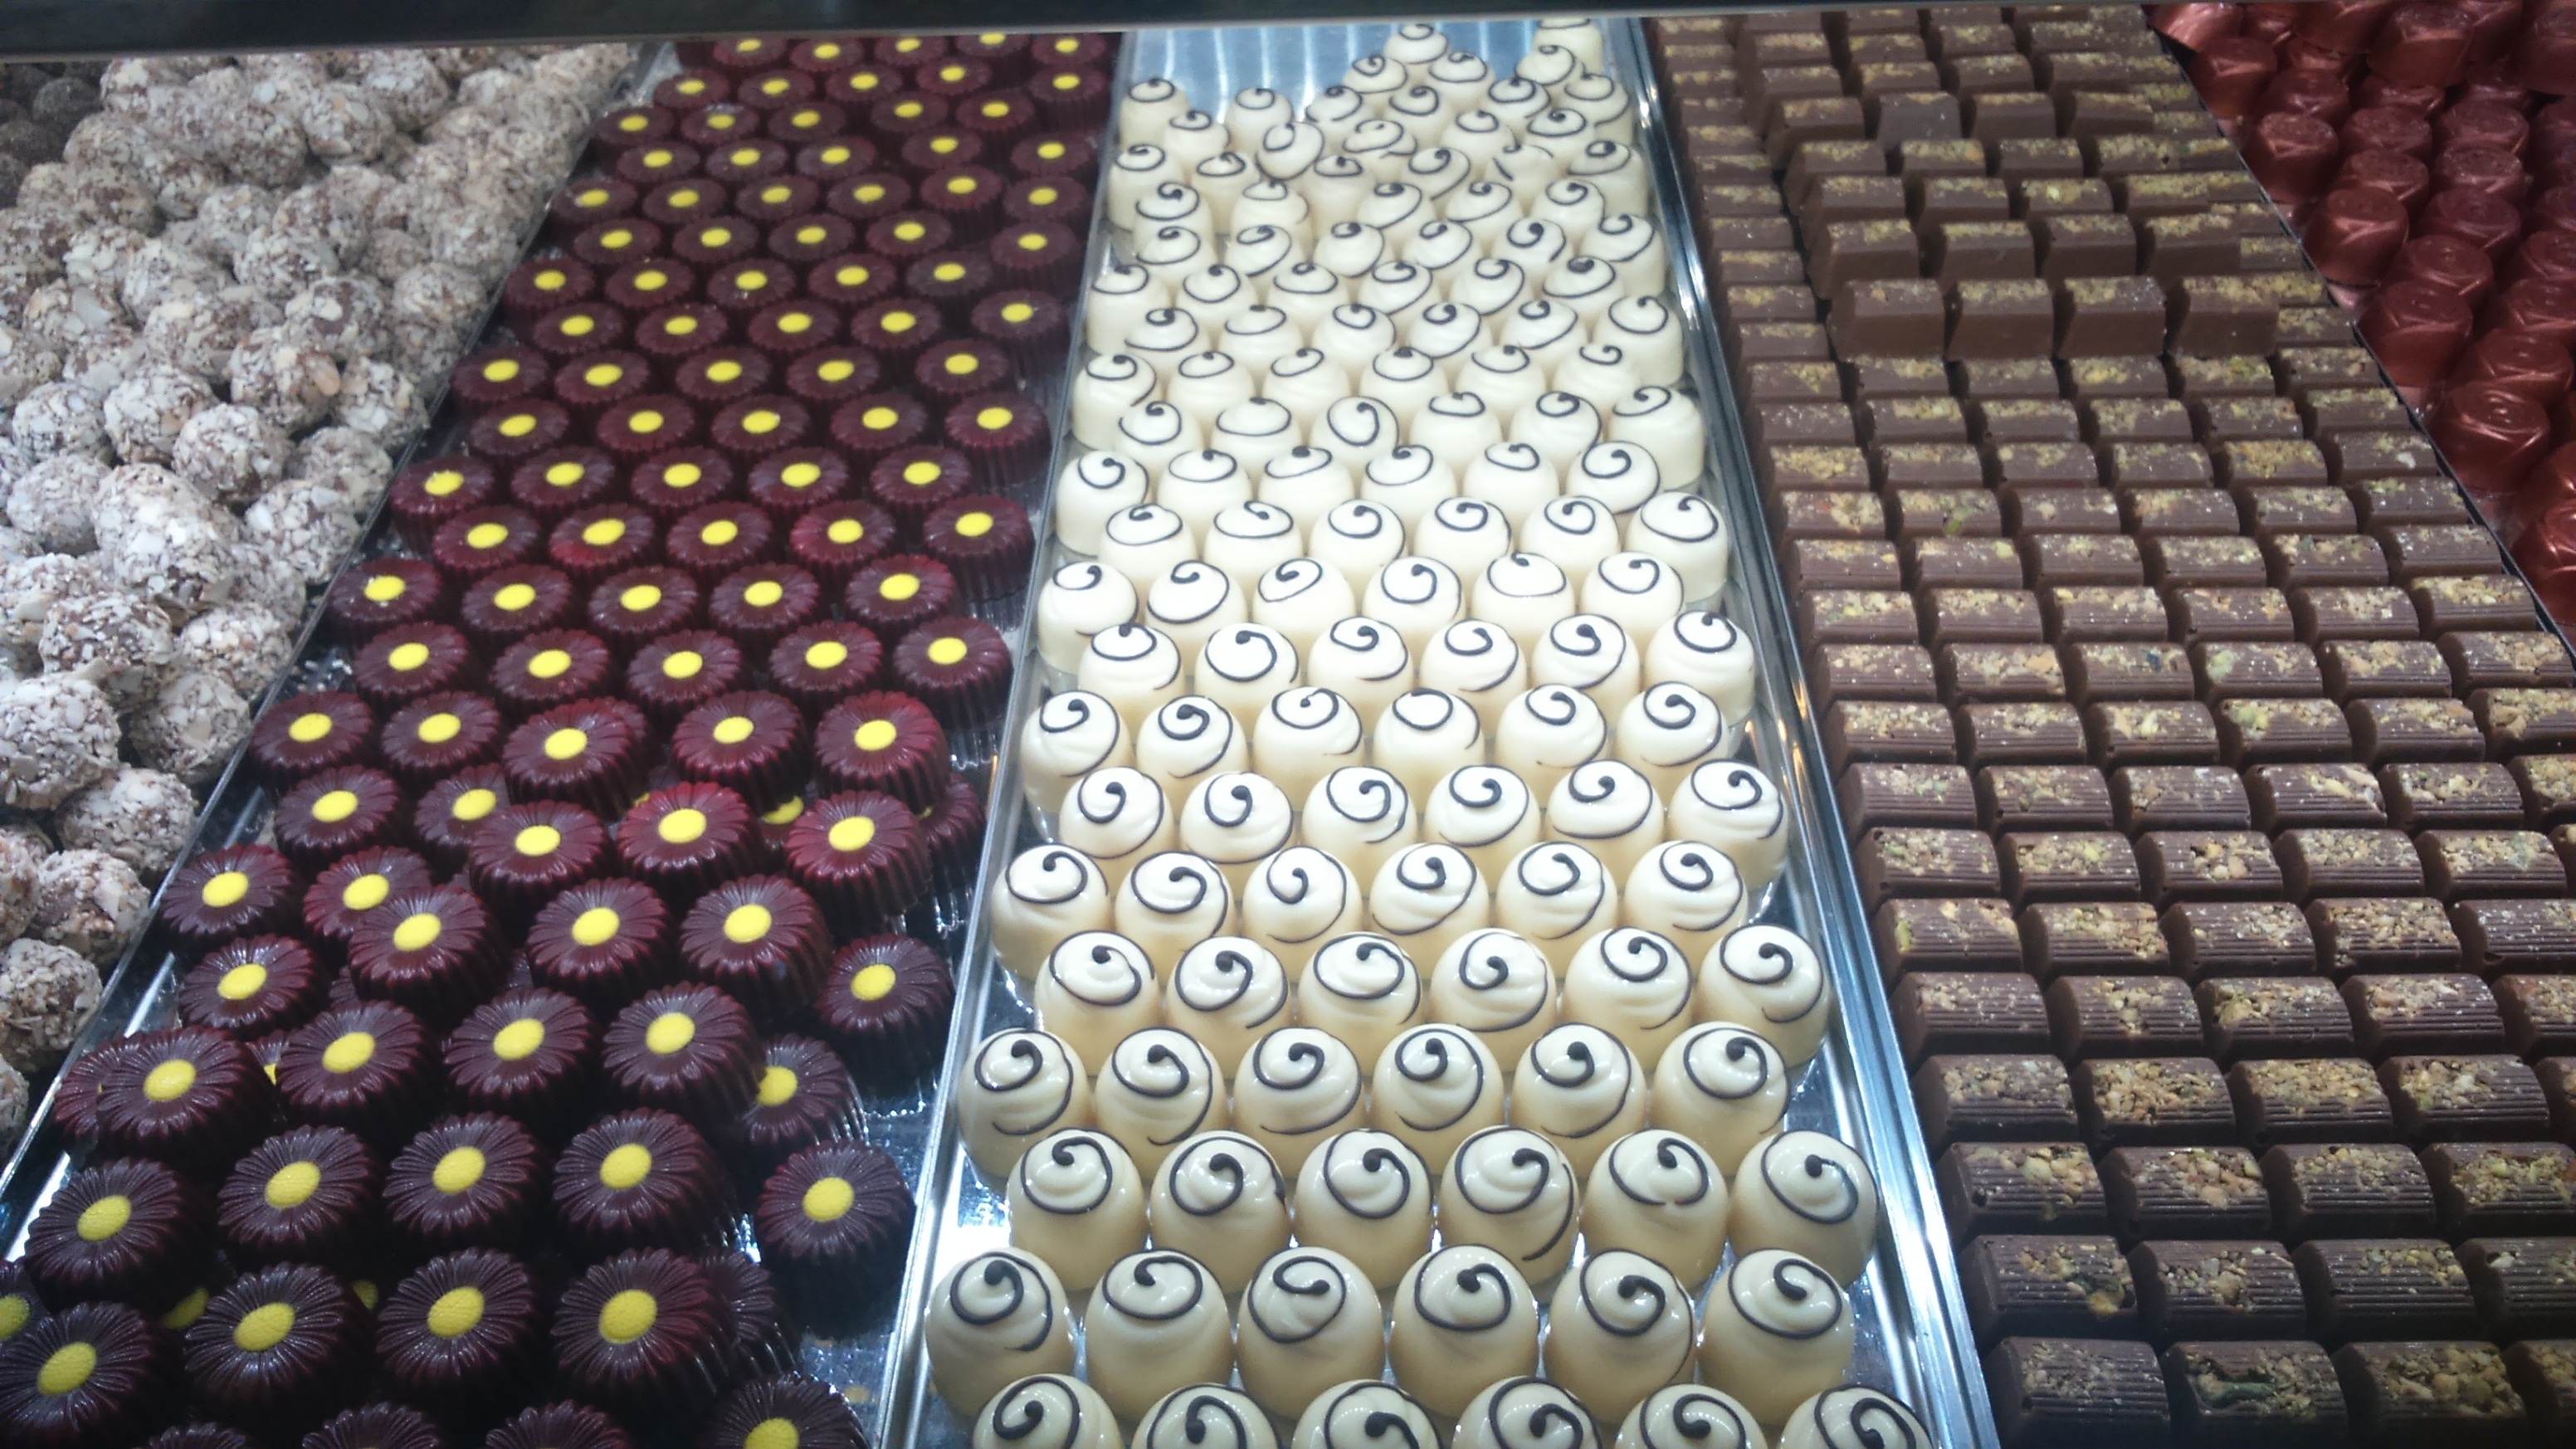 Шоколад флор. Floor шоколад. Конфеты на рынке. СТО килограмм шоколада. Новосибирская (кондитерская фабрика).